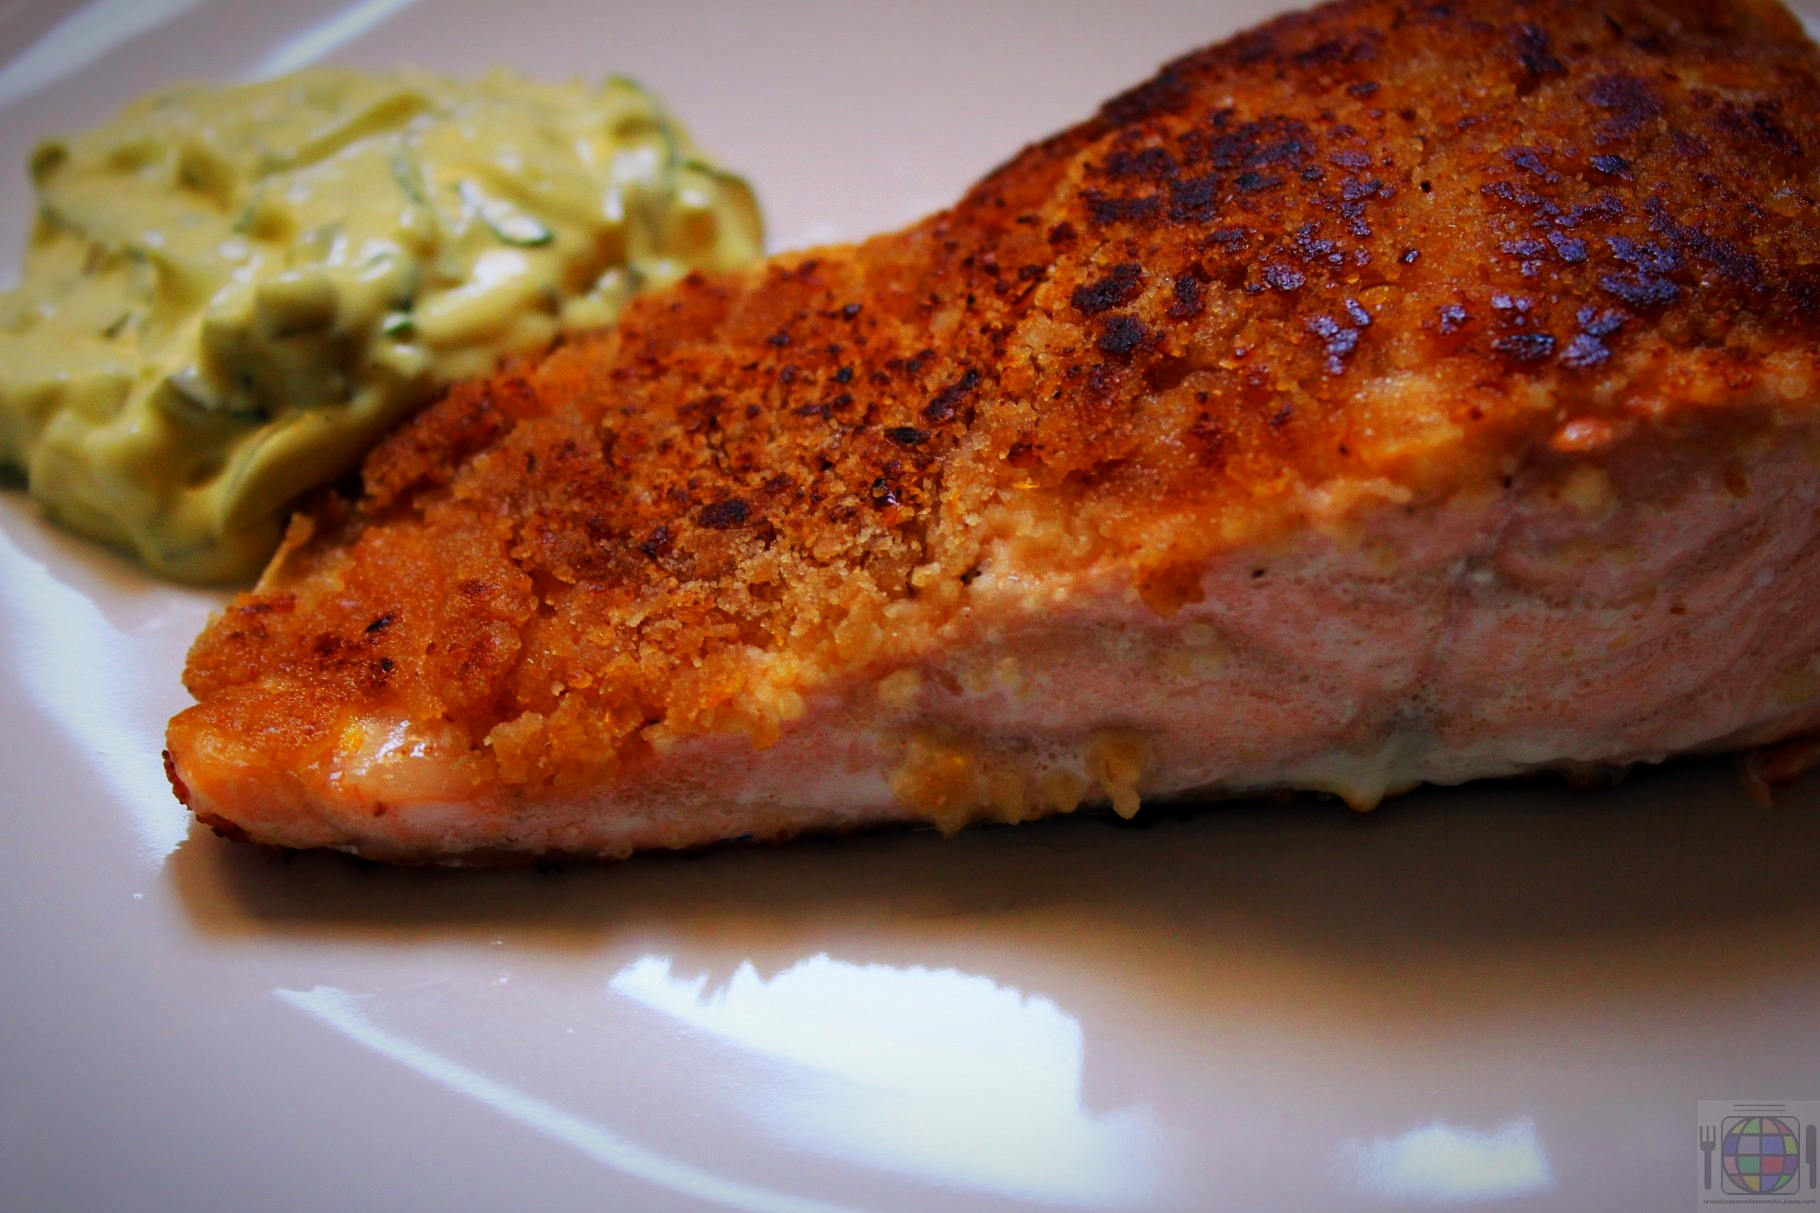 Emplatamos el salmón, con o sin piel, (yo prefiero sin piel, para dejar el plato limpio) acompañado de la salsa tártara